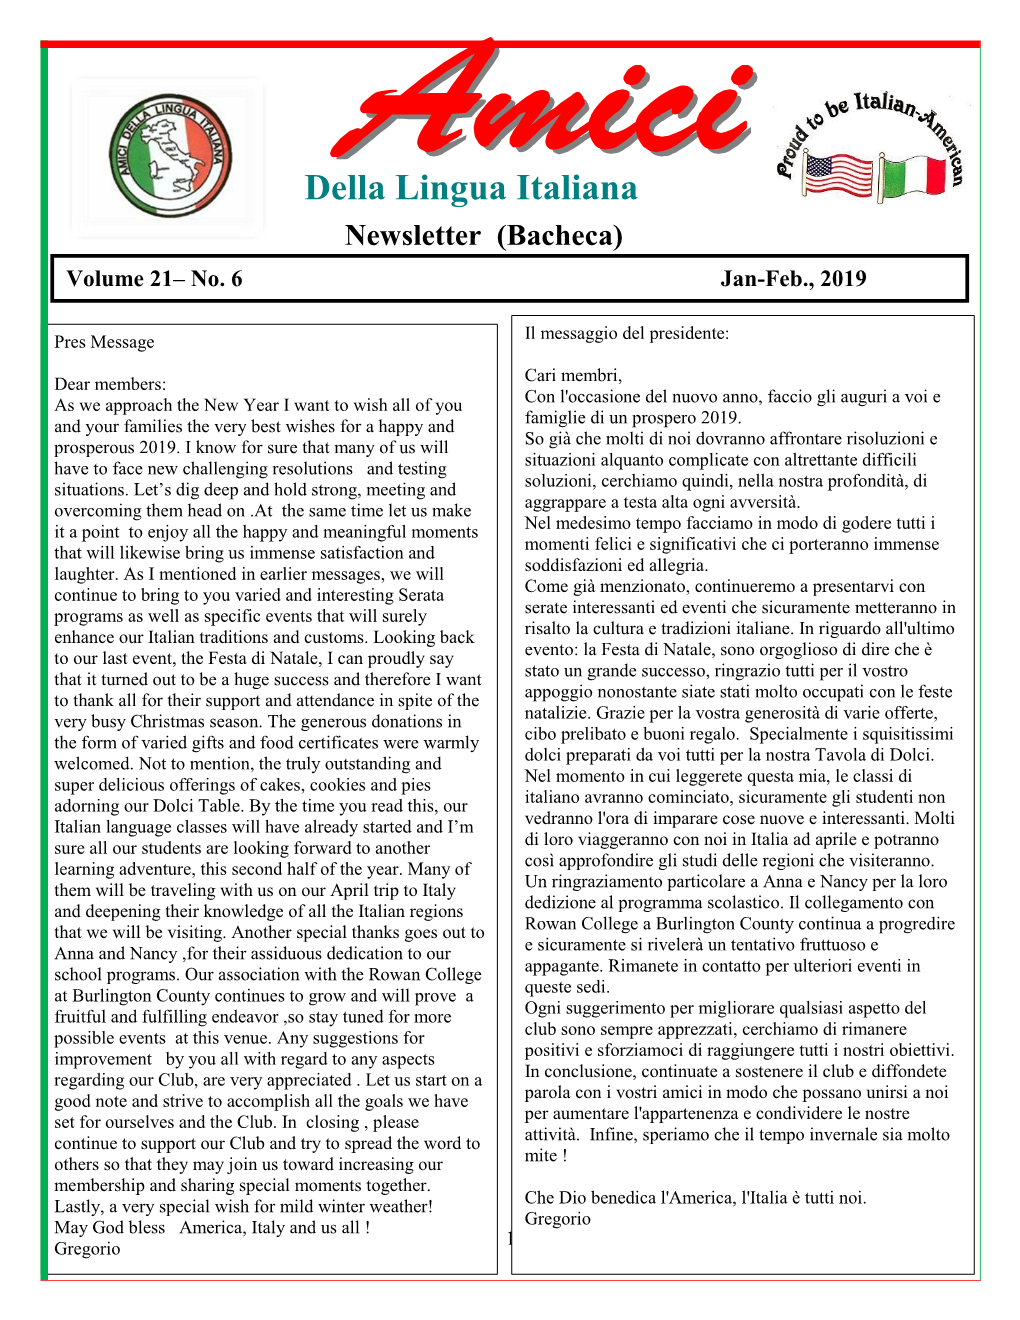 Della Lingua Italiana